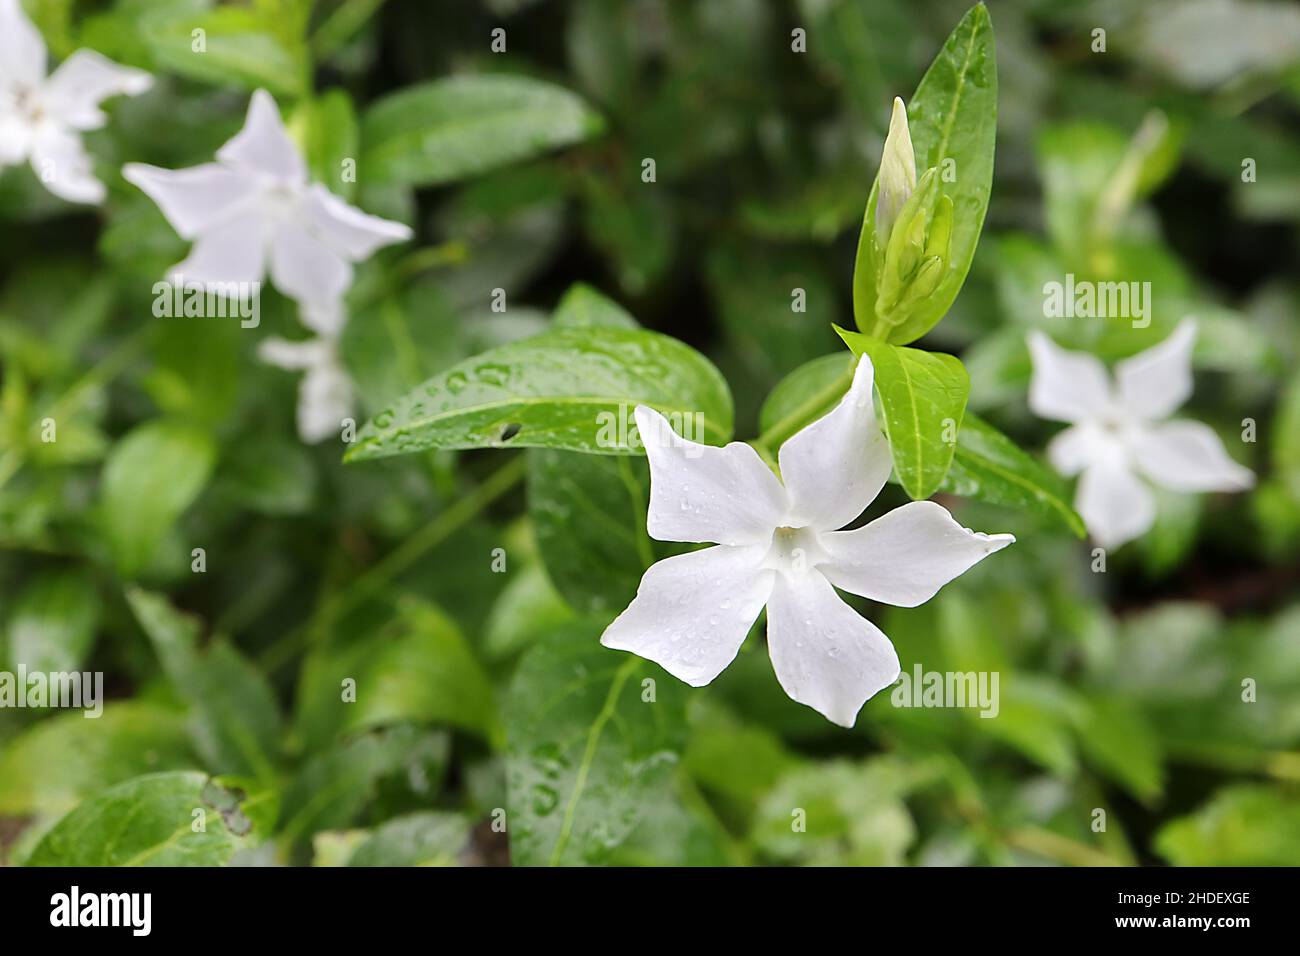 Vinca Major «Alba» Greater white periwinkle - flores blancas en forma de estrella y hojas de ovado verde, enero, Inglaterra, Reino Unido Foto de stock